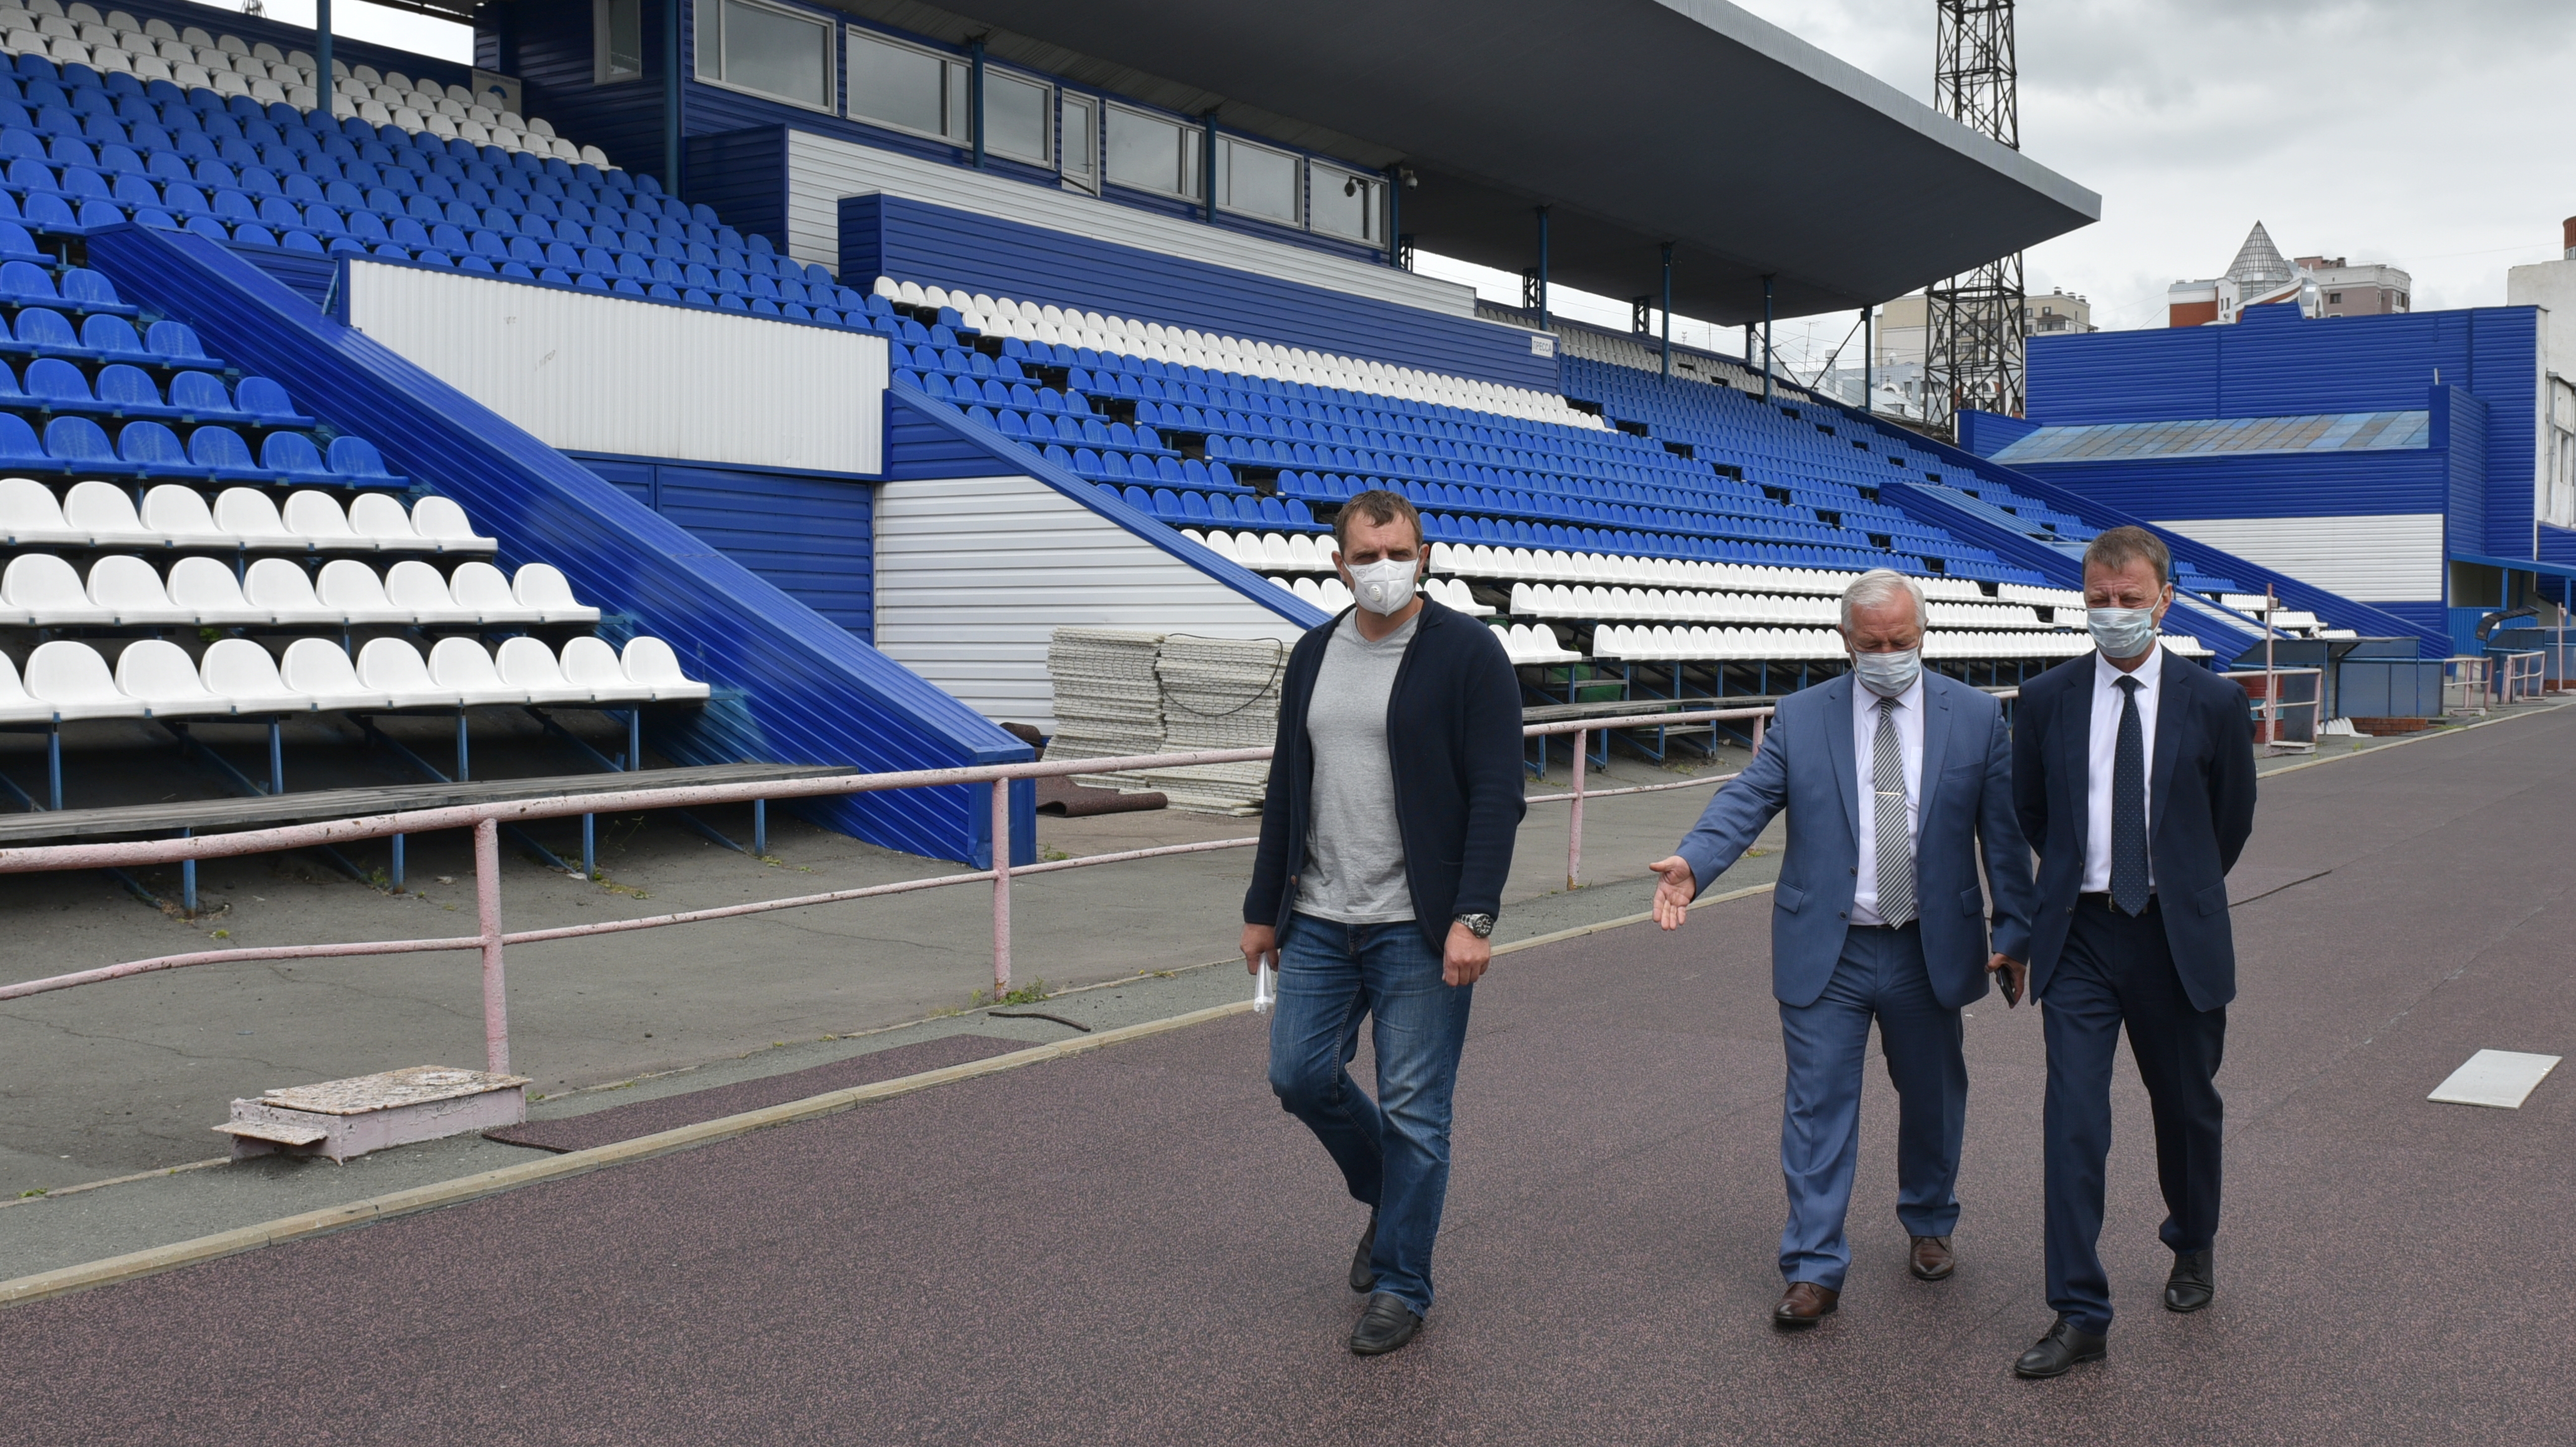 Глава города Вячеслав Франк посетил барнаульский стадион «Динамо», на котором сейчас проходит масштабная реконструкция